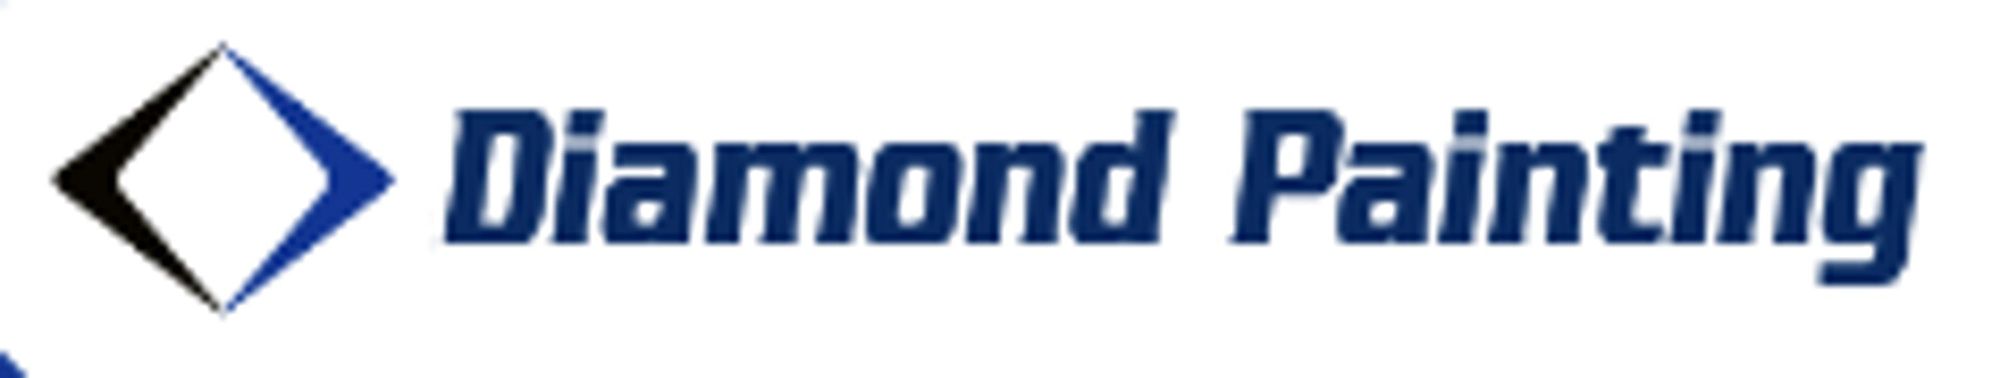 Business logo of Diamond Painting 